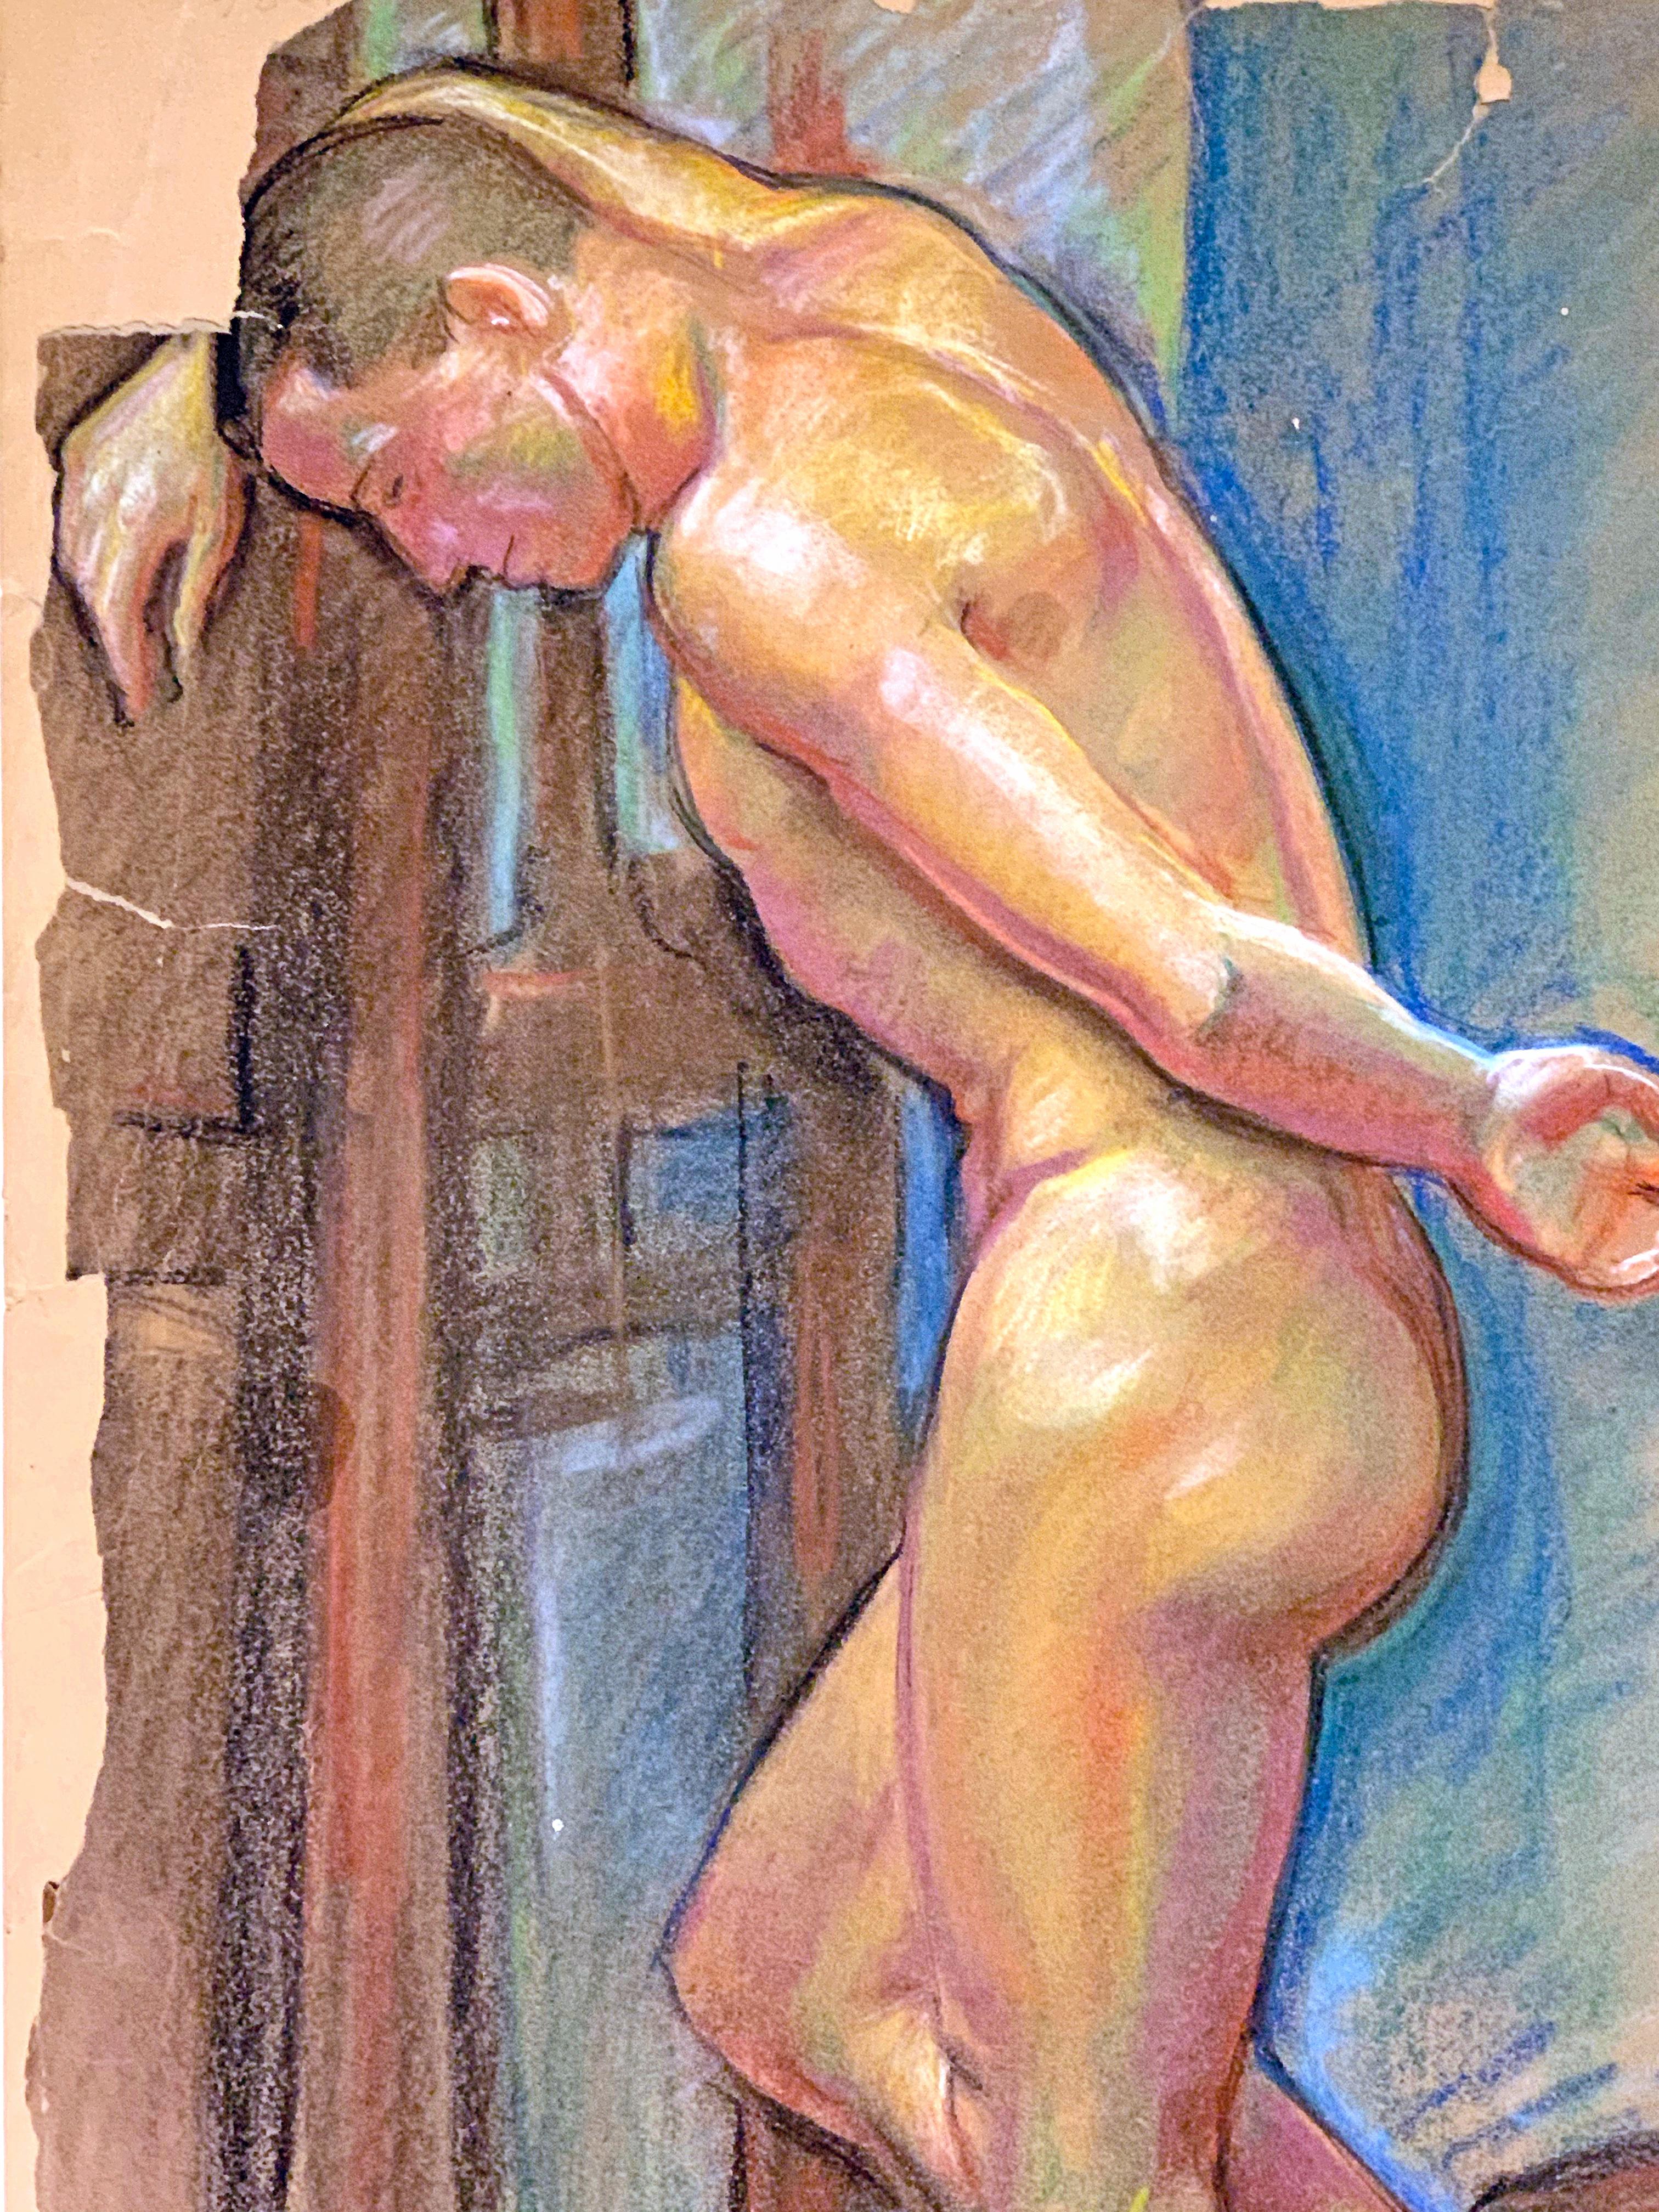 Sensuel et vivement coloré, ce dessin au pastel d'un nu masculin debout, la tête appuyée contre le mur, a été réalisé par Allyn COX, fils du célèbre muraliste Kenyon Cox. Le jeune Allyn s'est distingué par l'exécution d'une série ambitieuse de